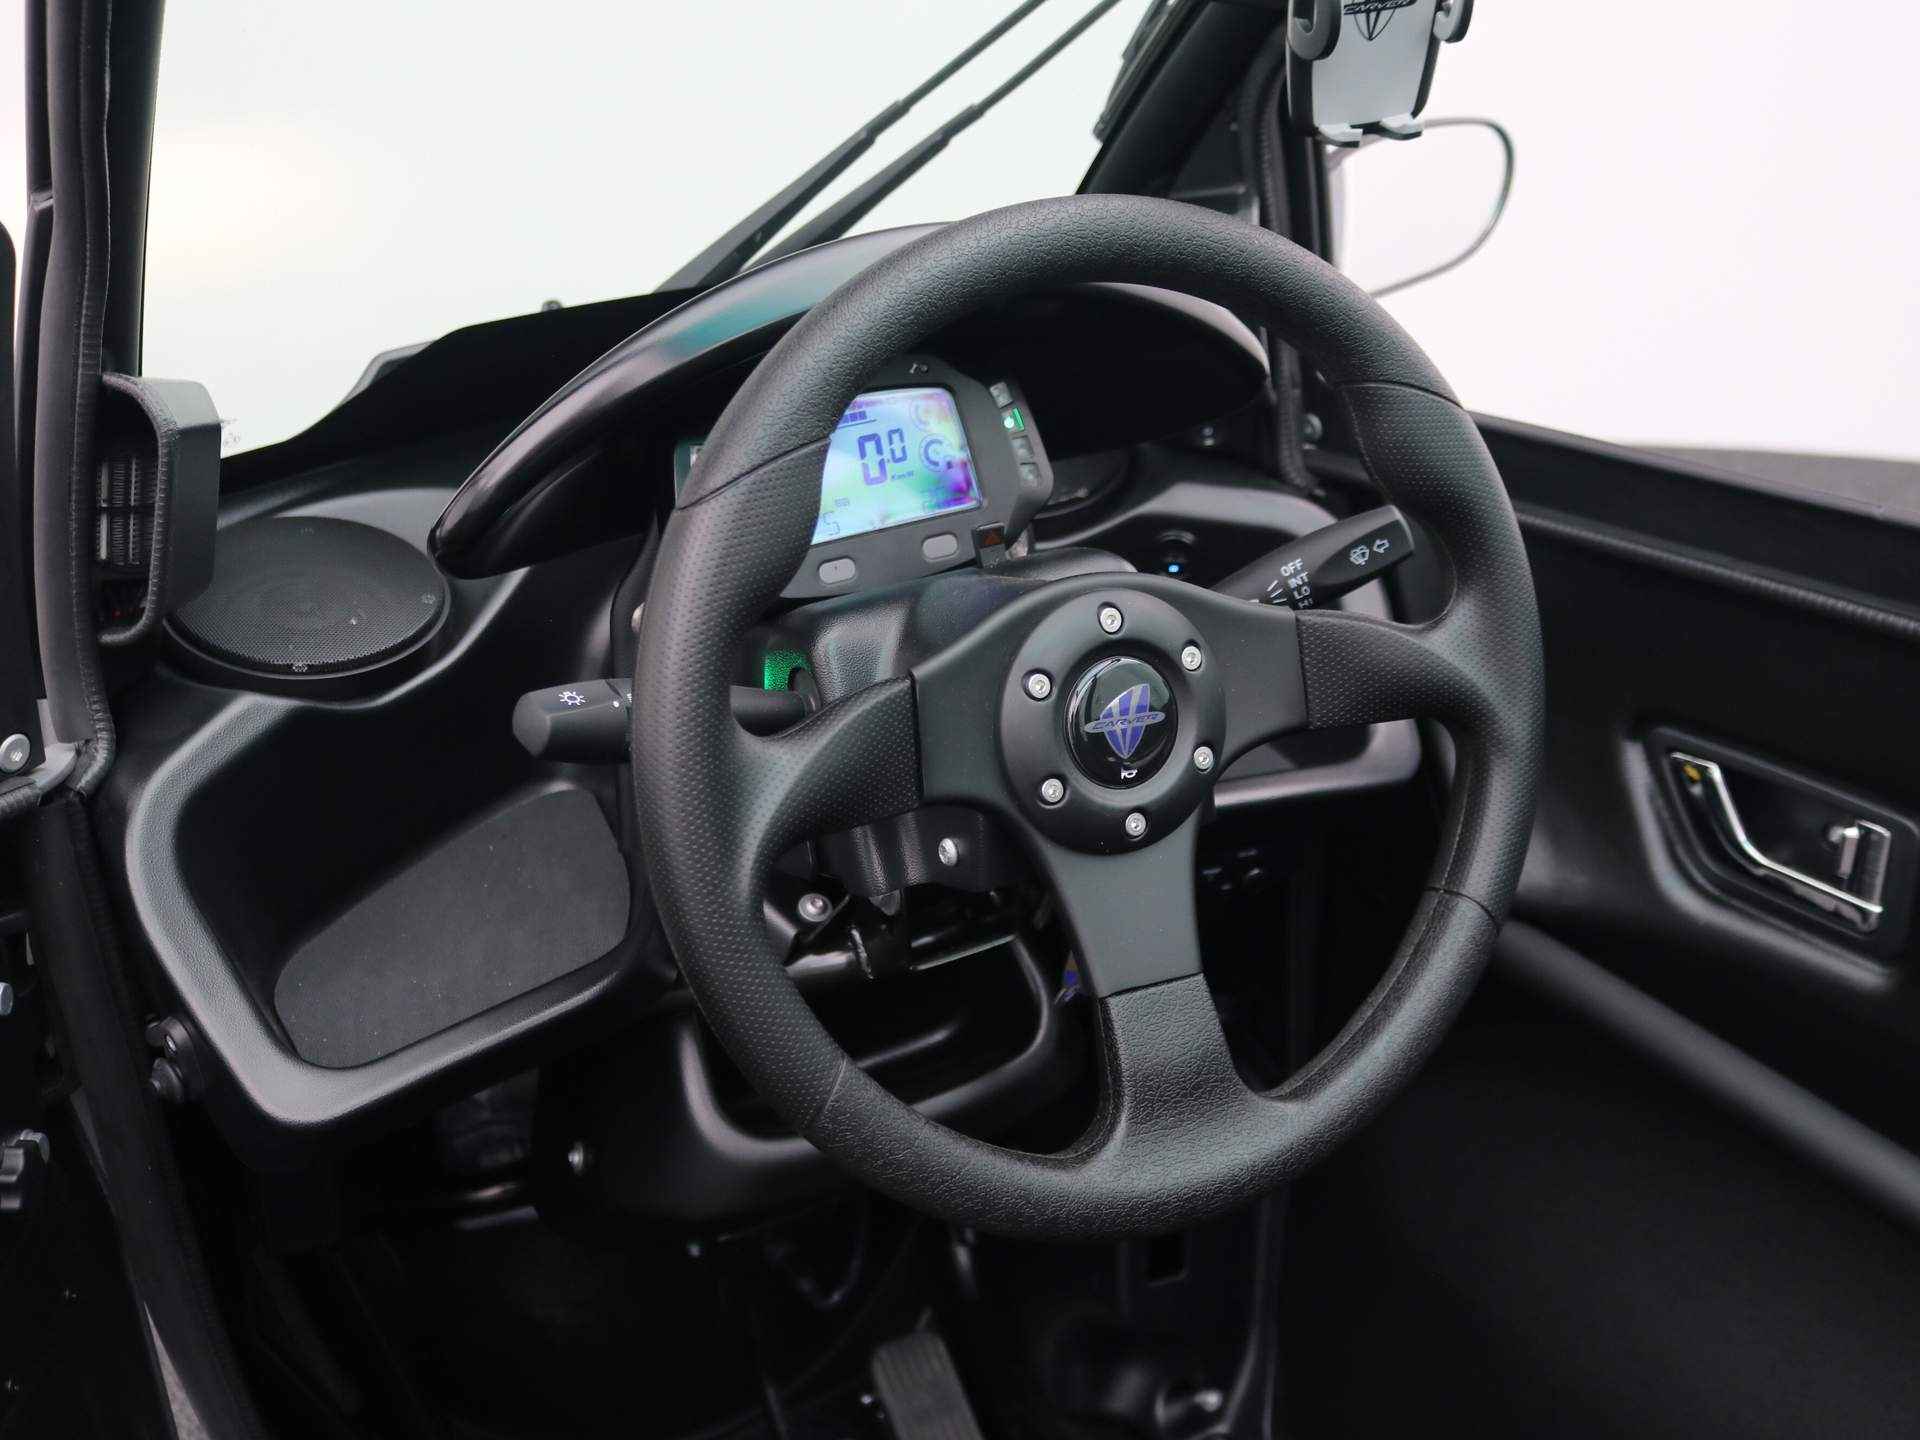 Carver R+ Brommobiel | Voorruit verwarming | Schuiframen | Bluetooth Audio | Cabrio dak | Dynamic Driving Modes | Telefoonhouder | USB | Geen wegenbelasting | 130KM Actieradius | Binnen 3 uur opgeladen! - 7/29